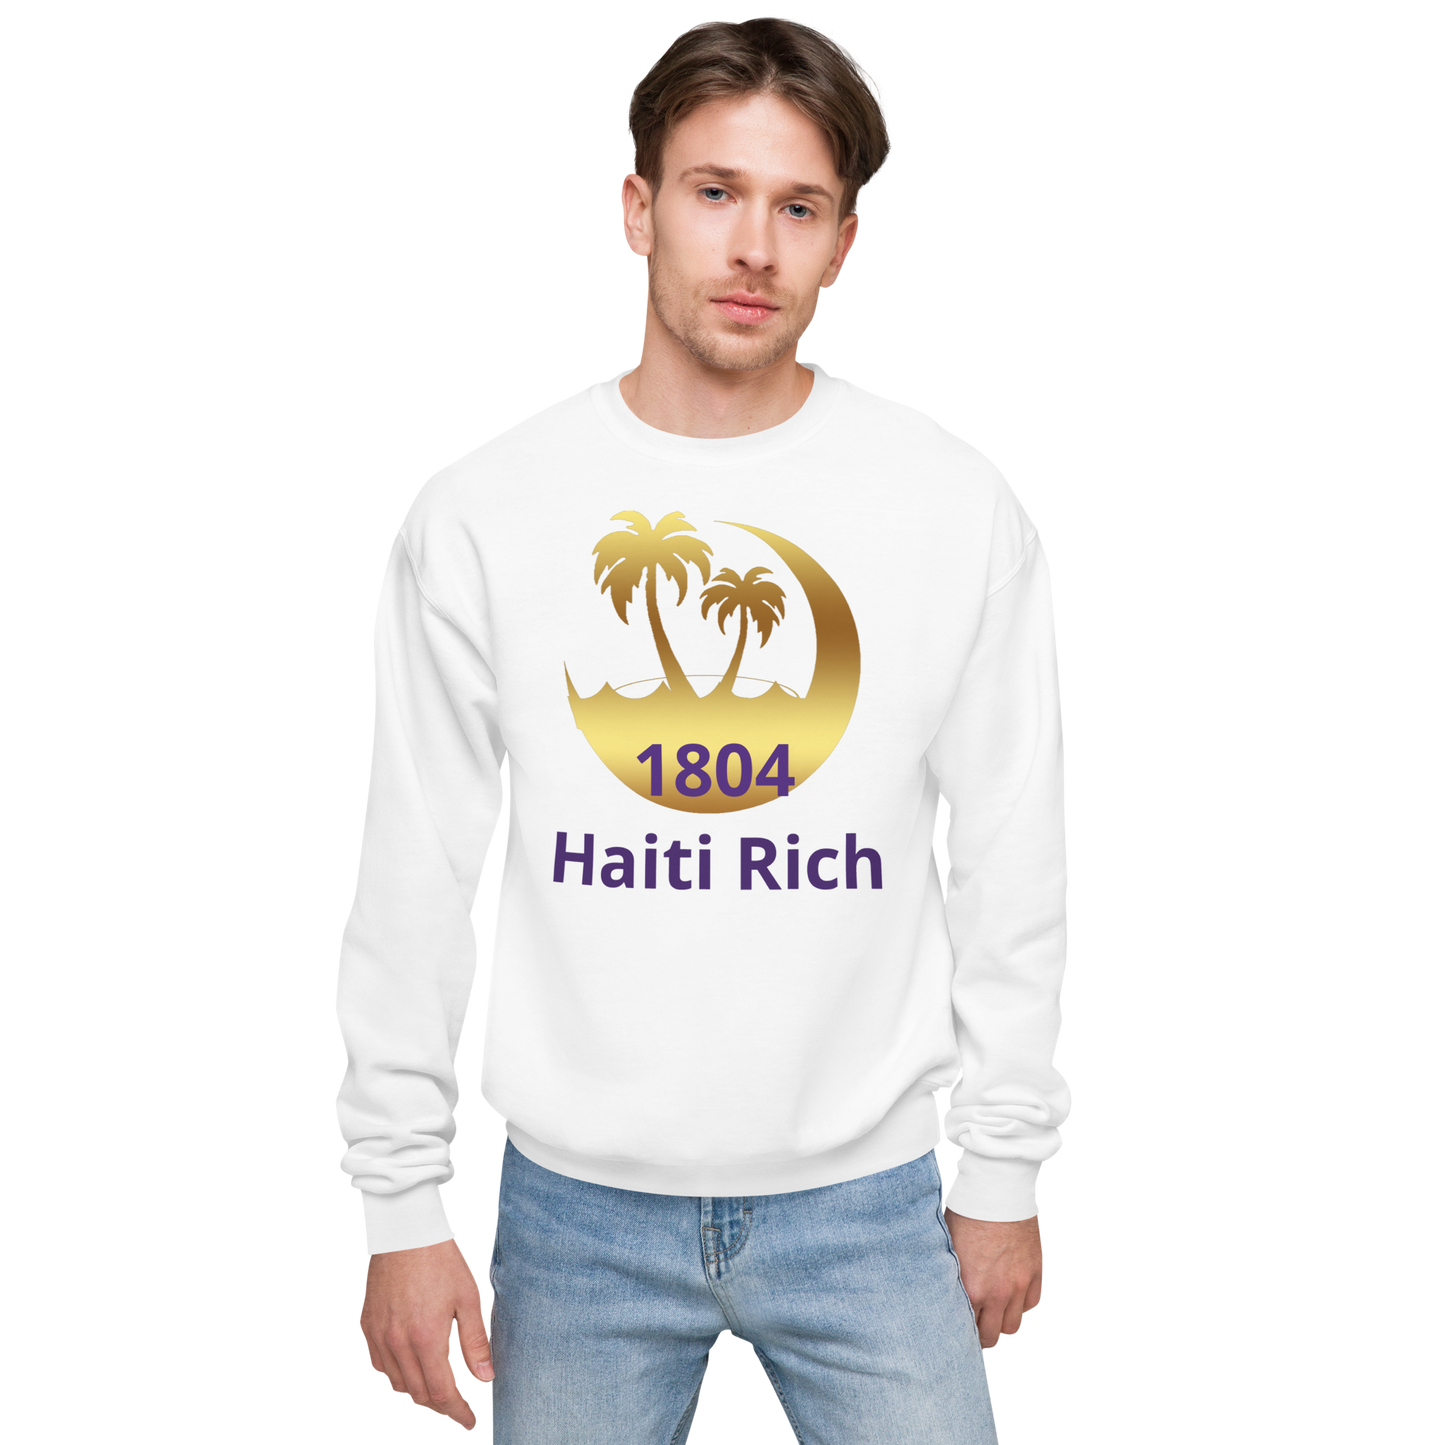 Haiti rich Unisex fleece sweatshirt